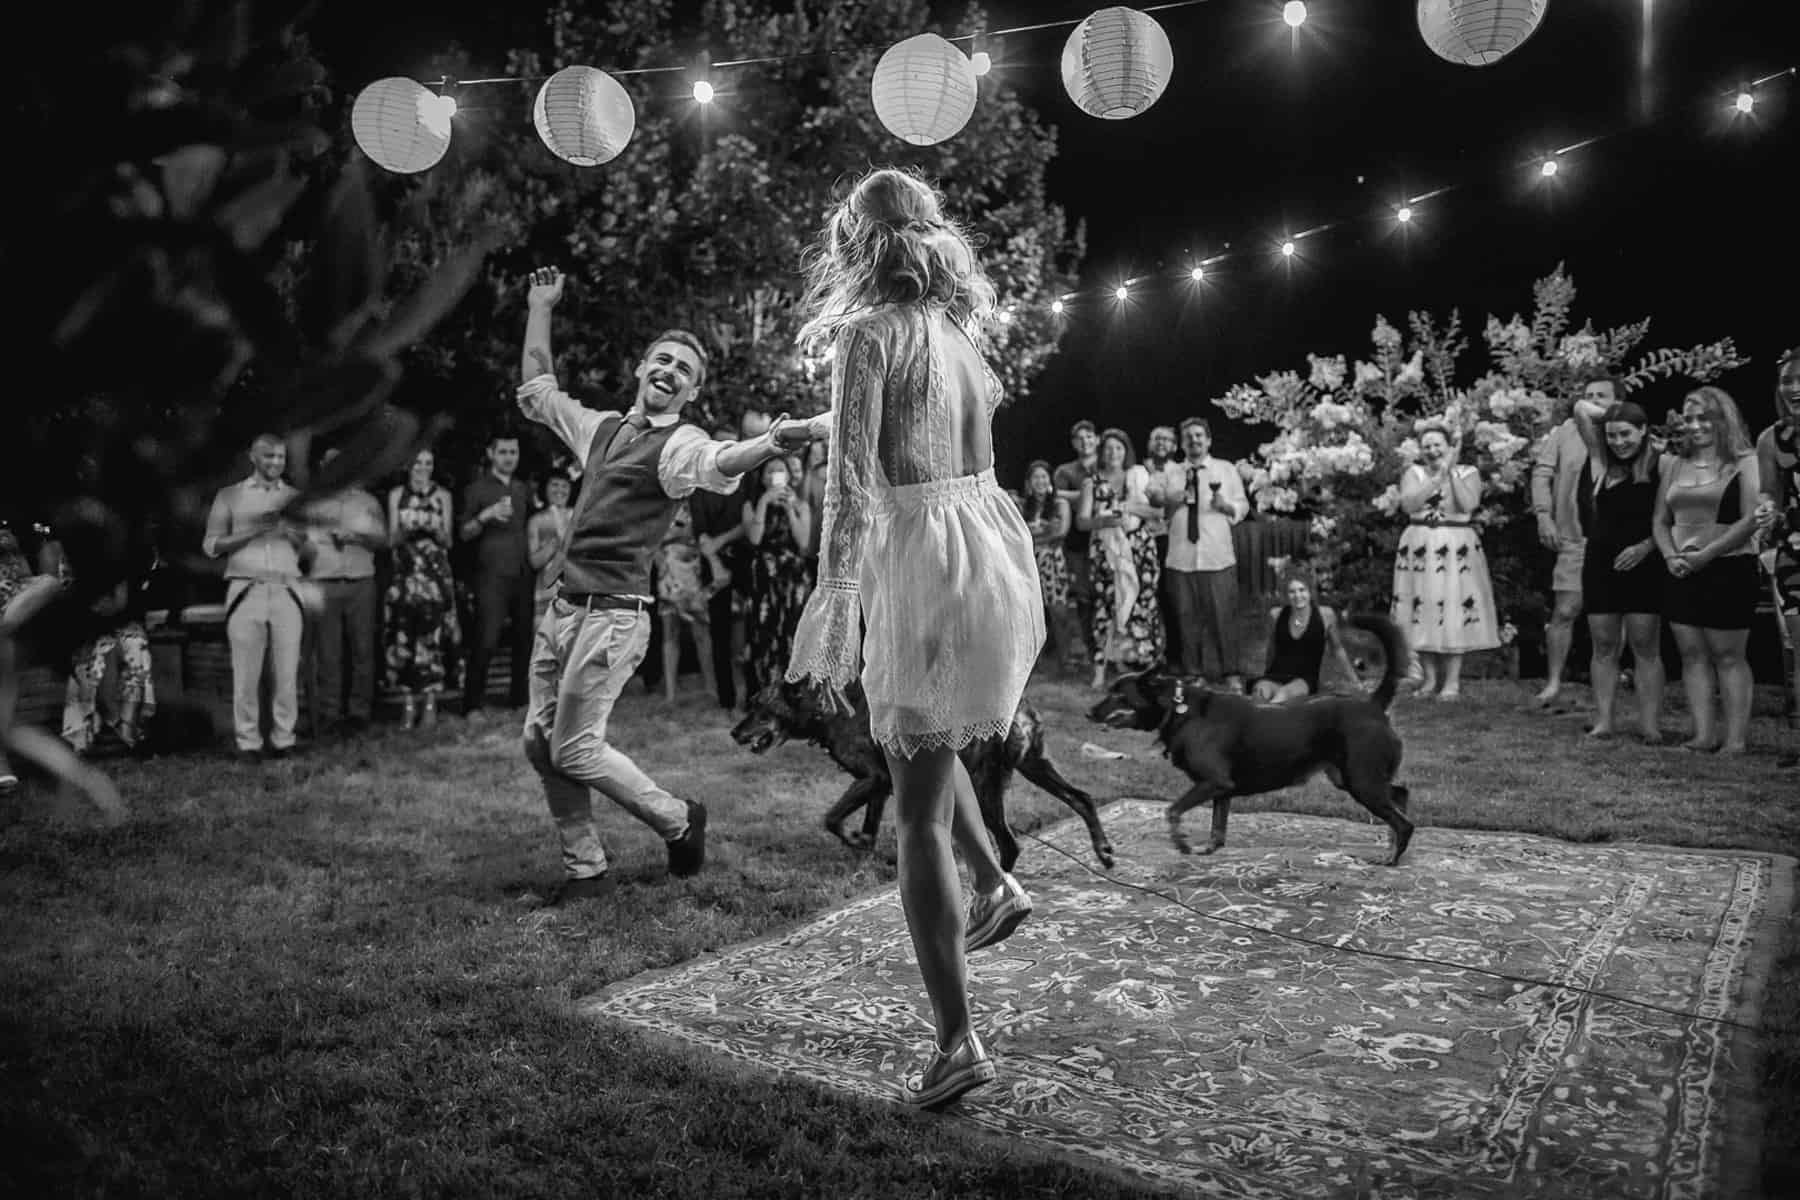 farm festival wedding photography by Oli Sansom